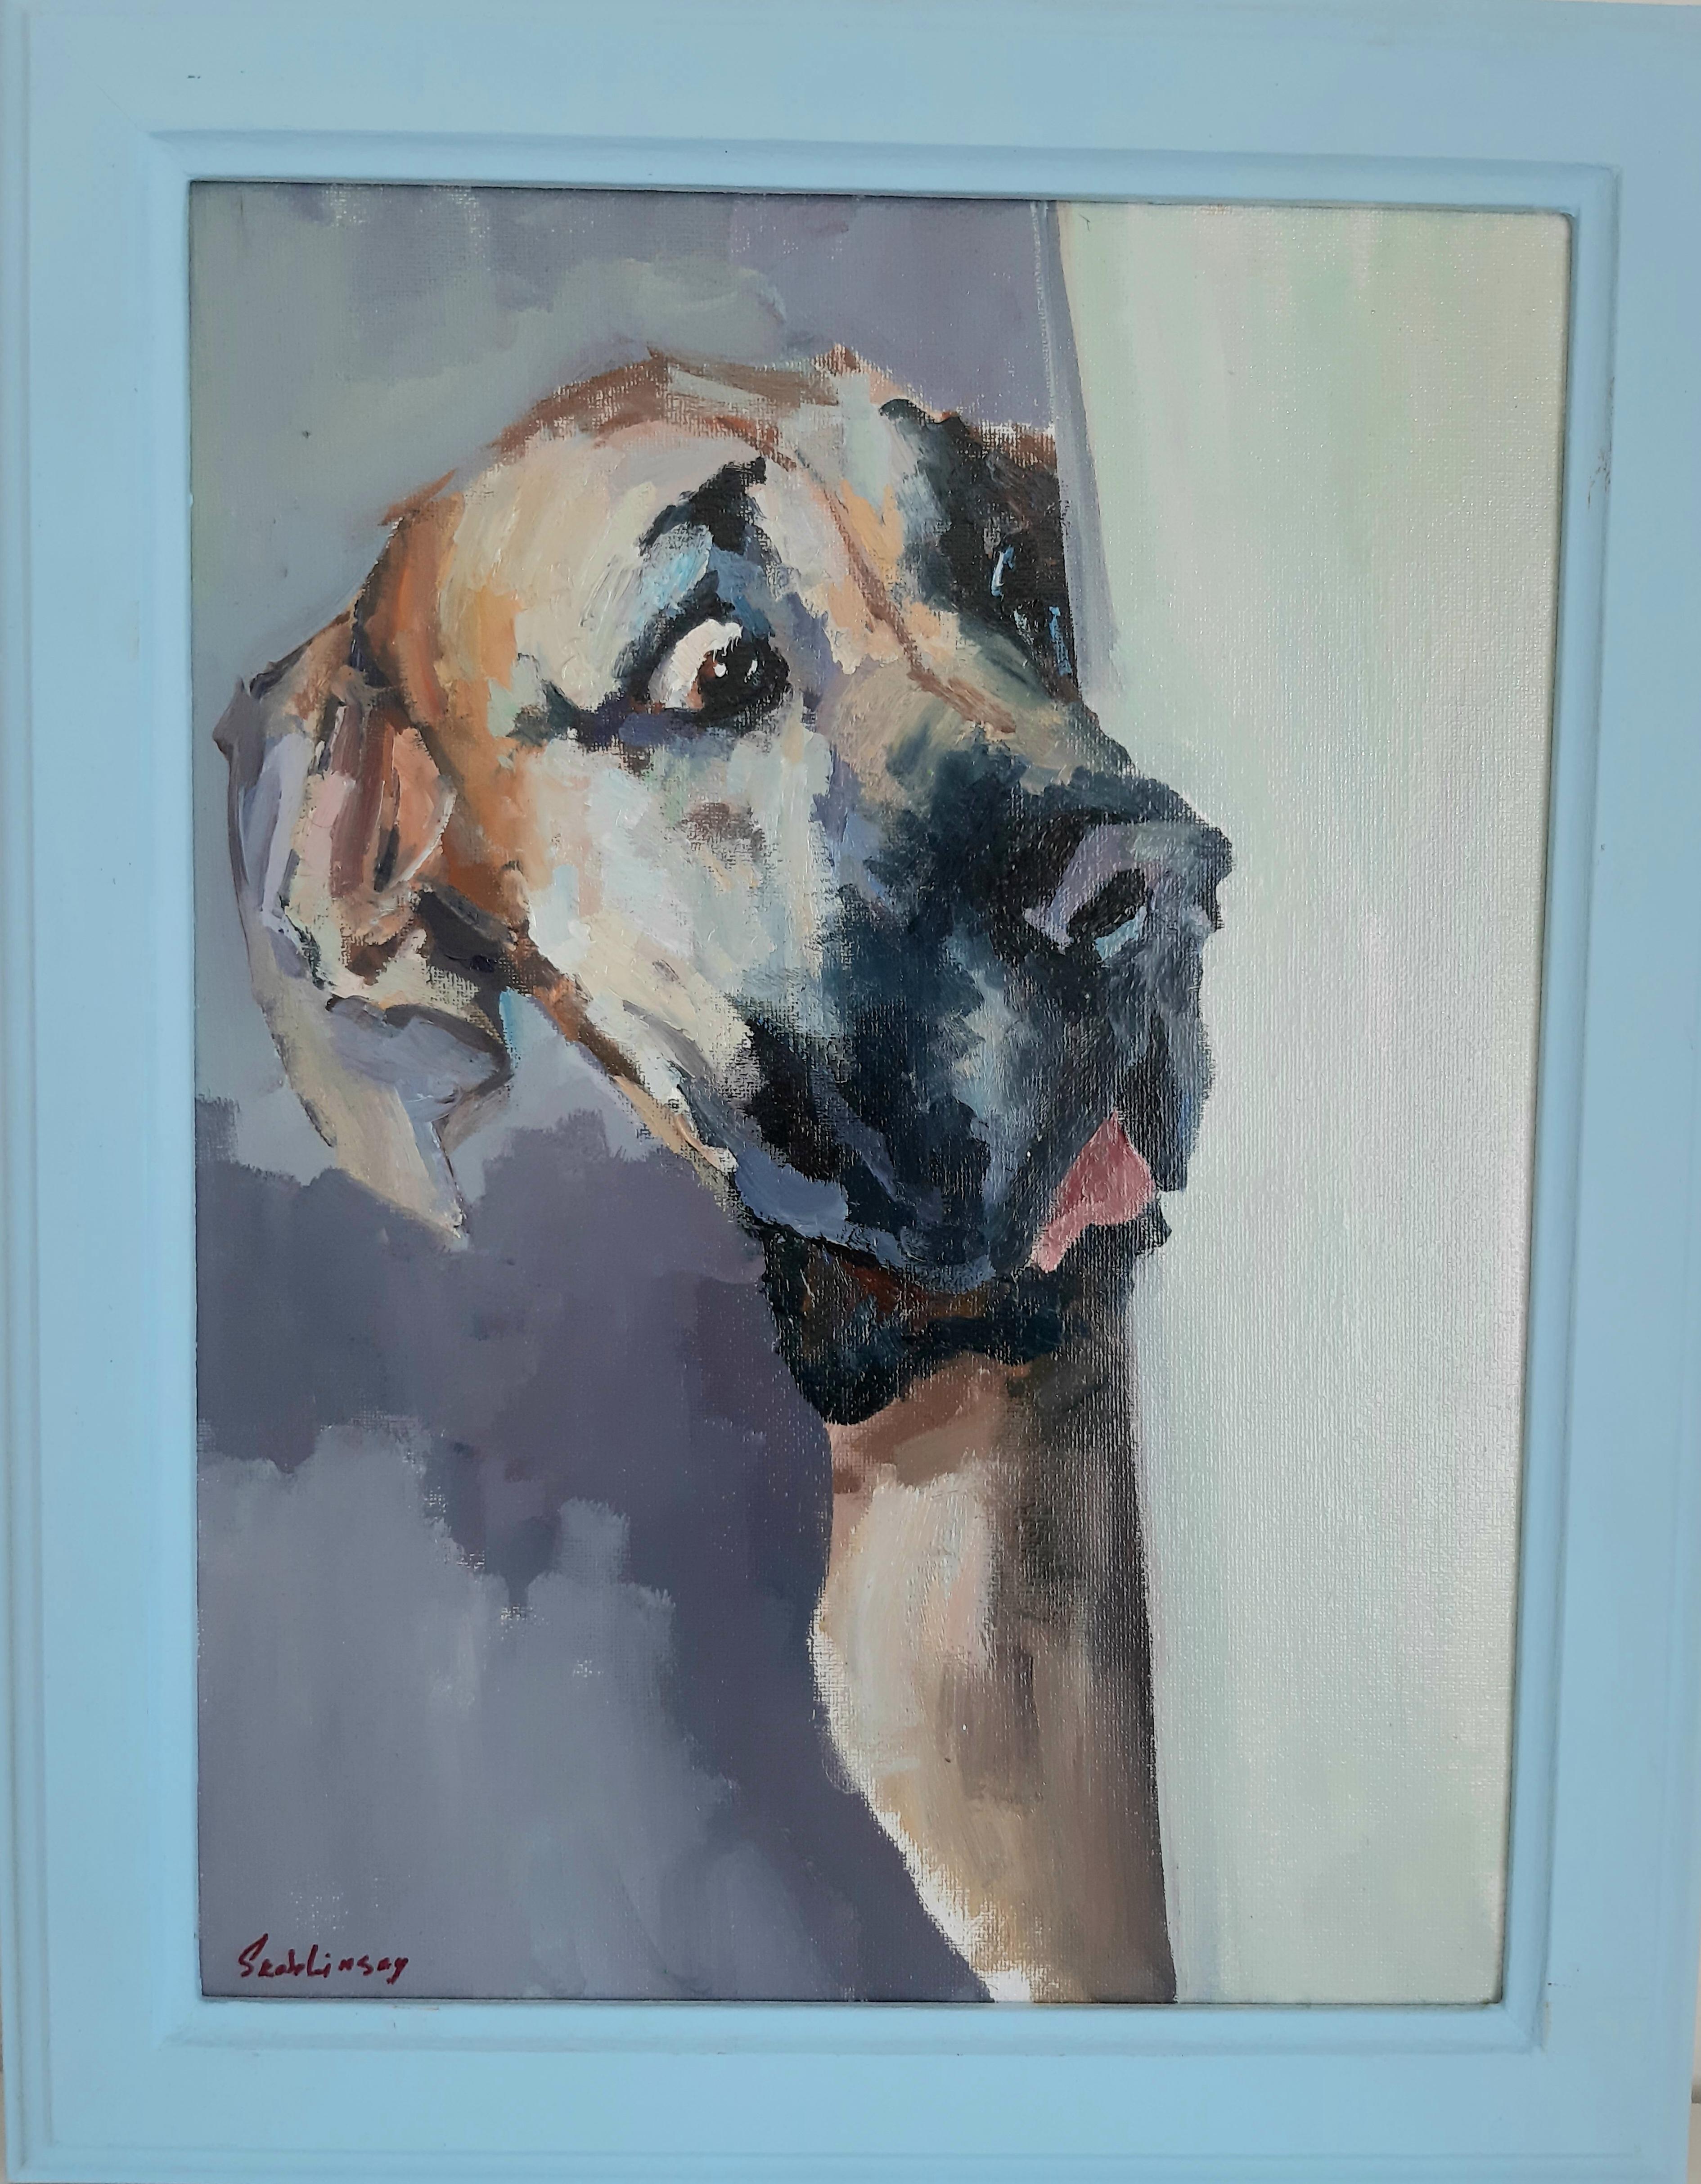 Animal Print Max Skoblinsky - Reflection de l'émerveillement : Canine Gaze at What's Happeninging ». Impression sur toile. CHIEN.